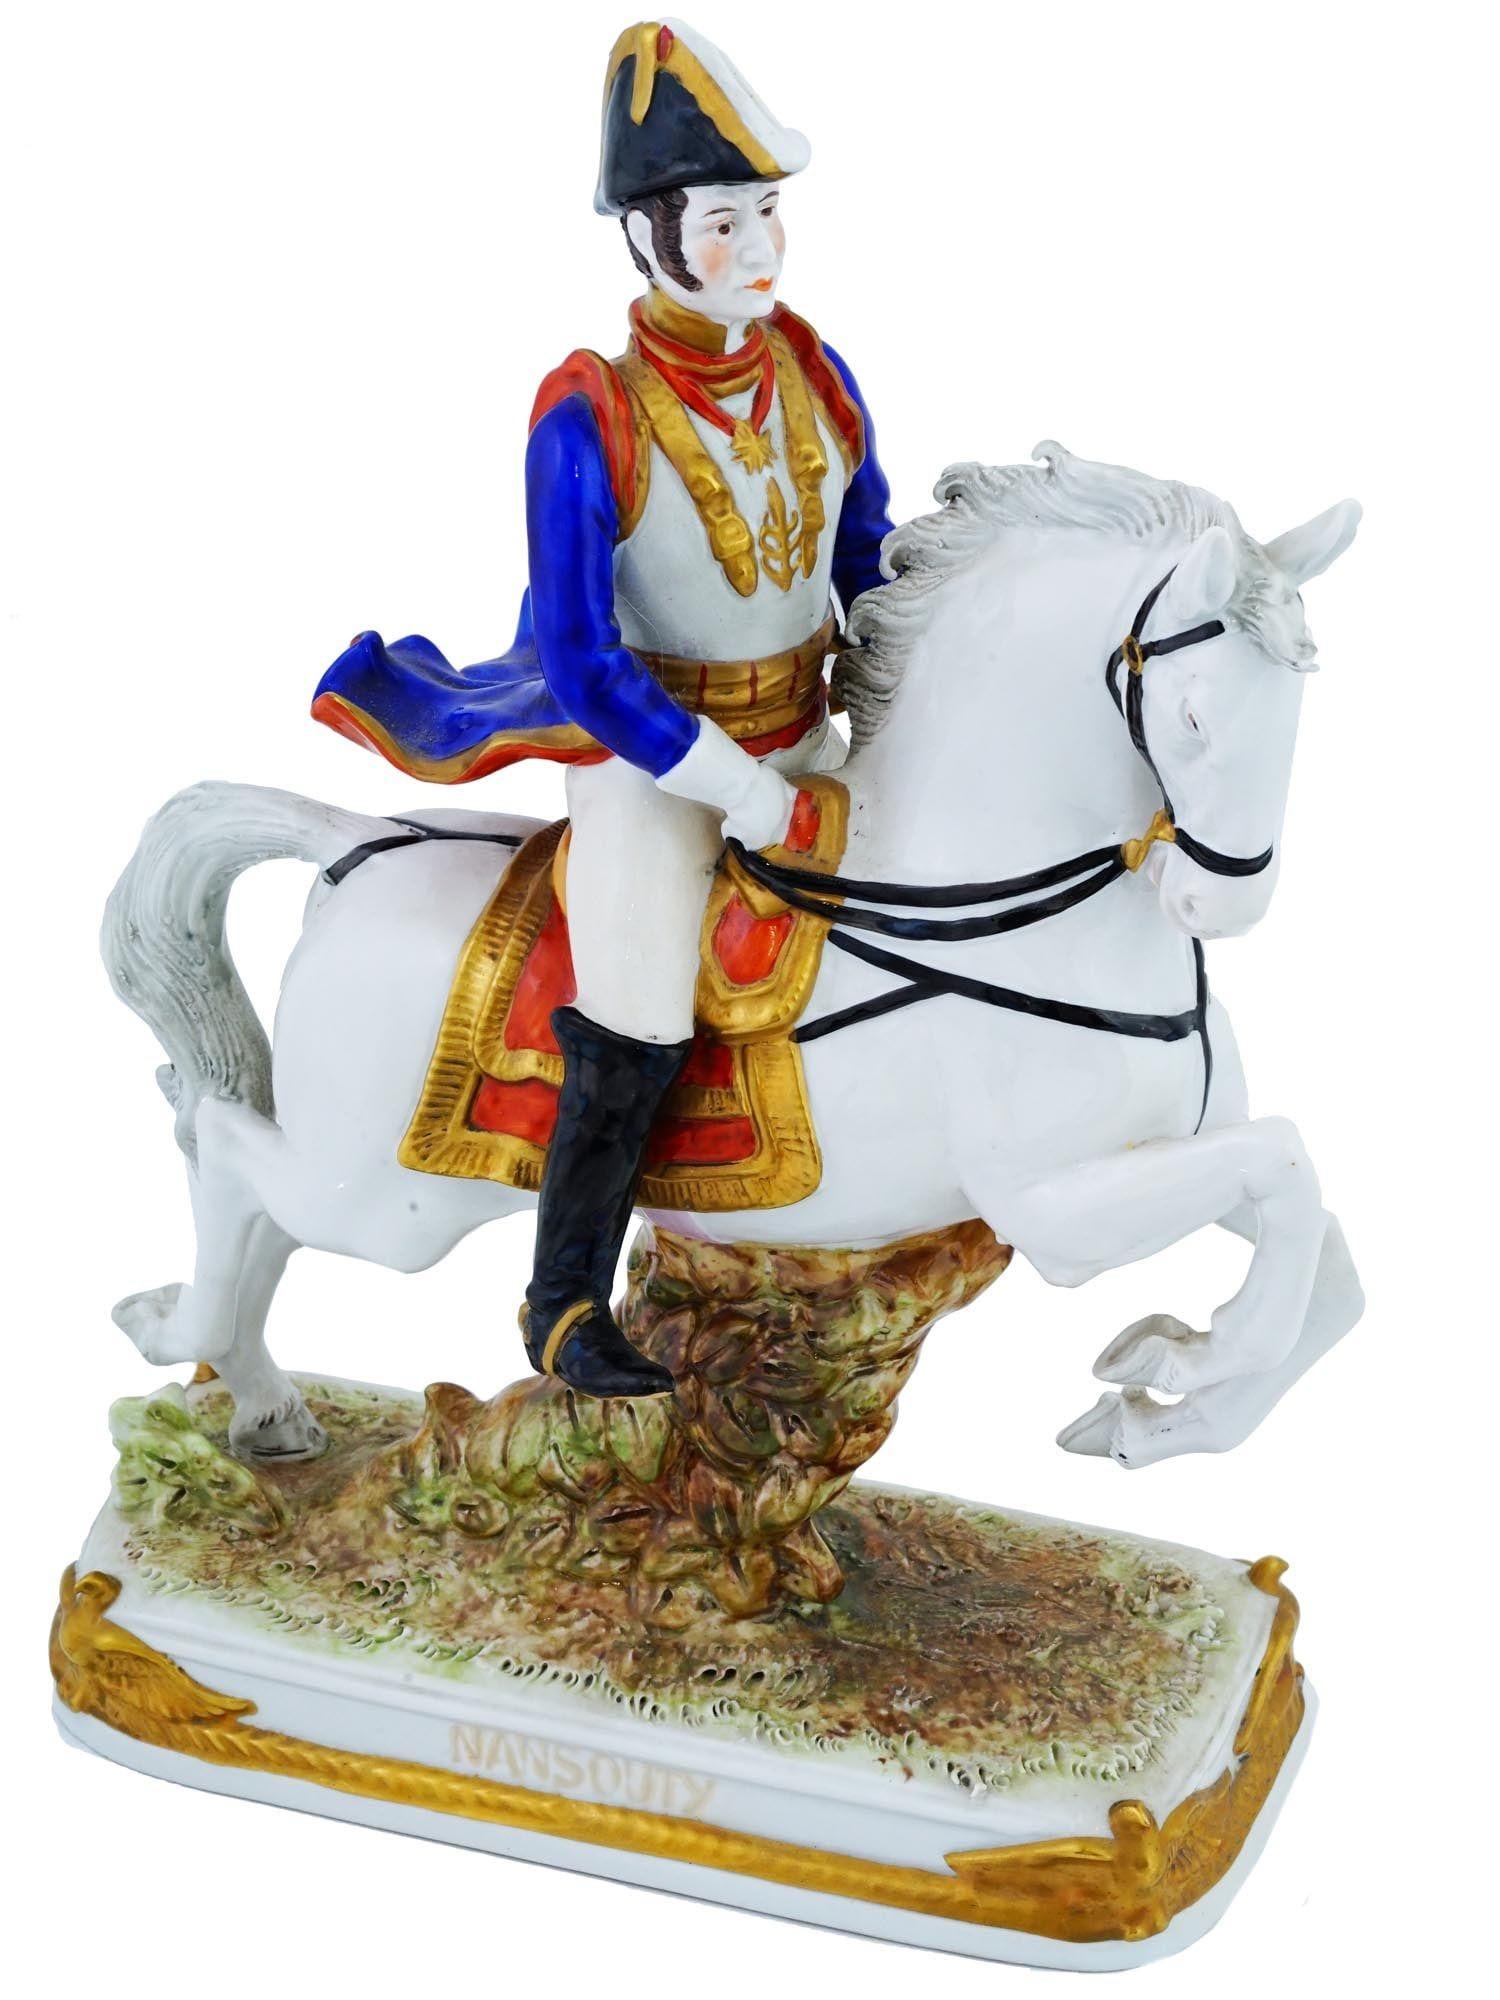 Vintage By (frühes 20. Jahrhundert) Deutsche Porzellanfigur, die den französischen Offizier der napoleonischen Armee auf einem weißen Pferd darstellt, Etienne Marie Antoine Champion, comte de Nansouty, 1768 bis 1815. Aus der Porzellanmanufaktur